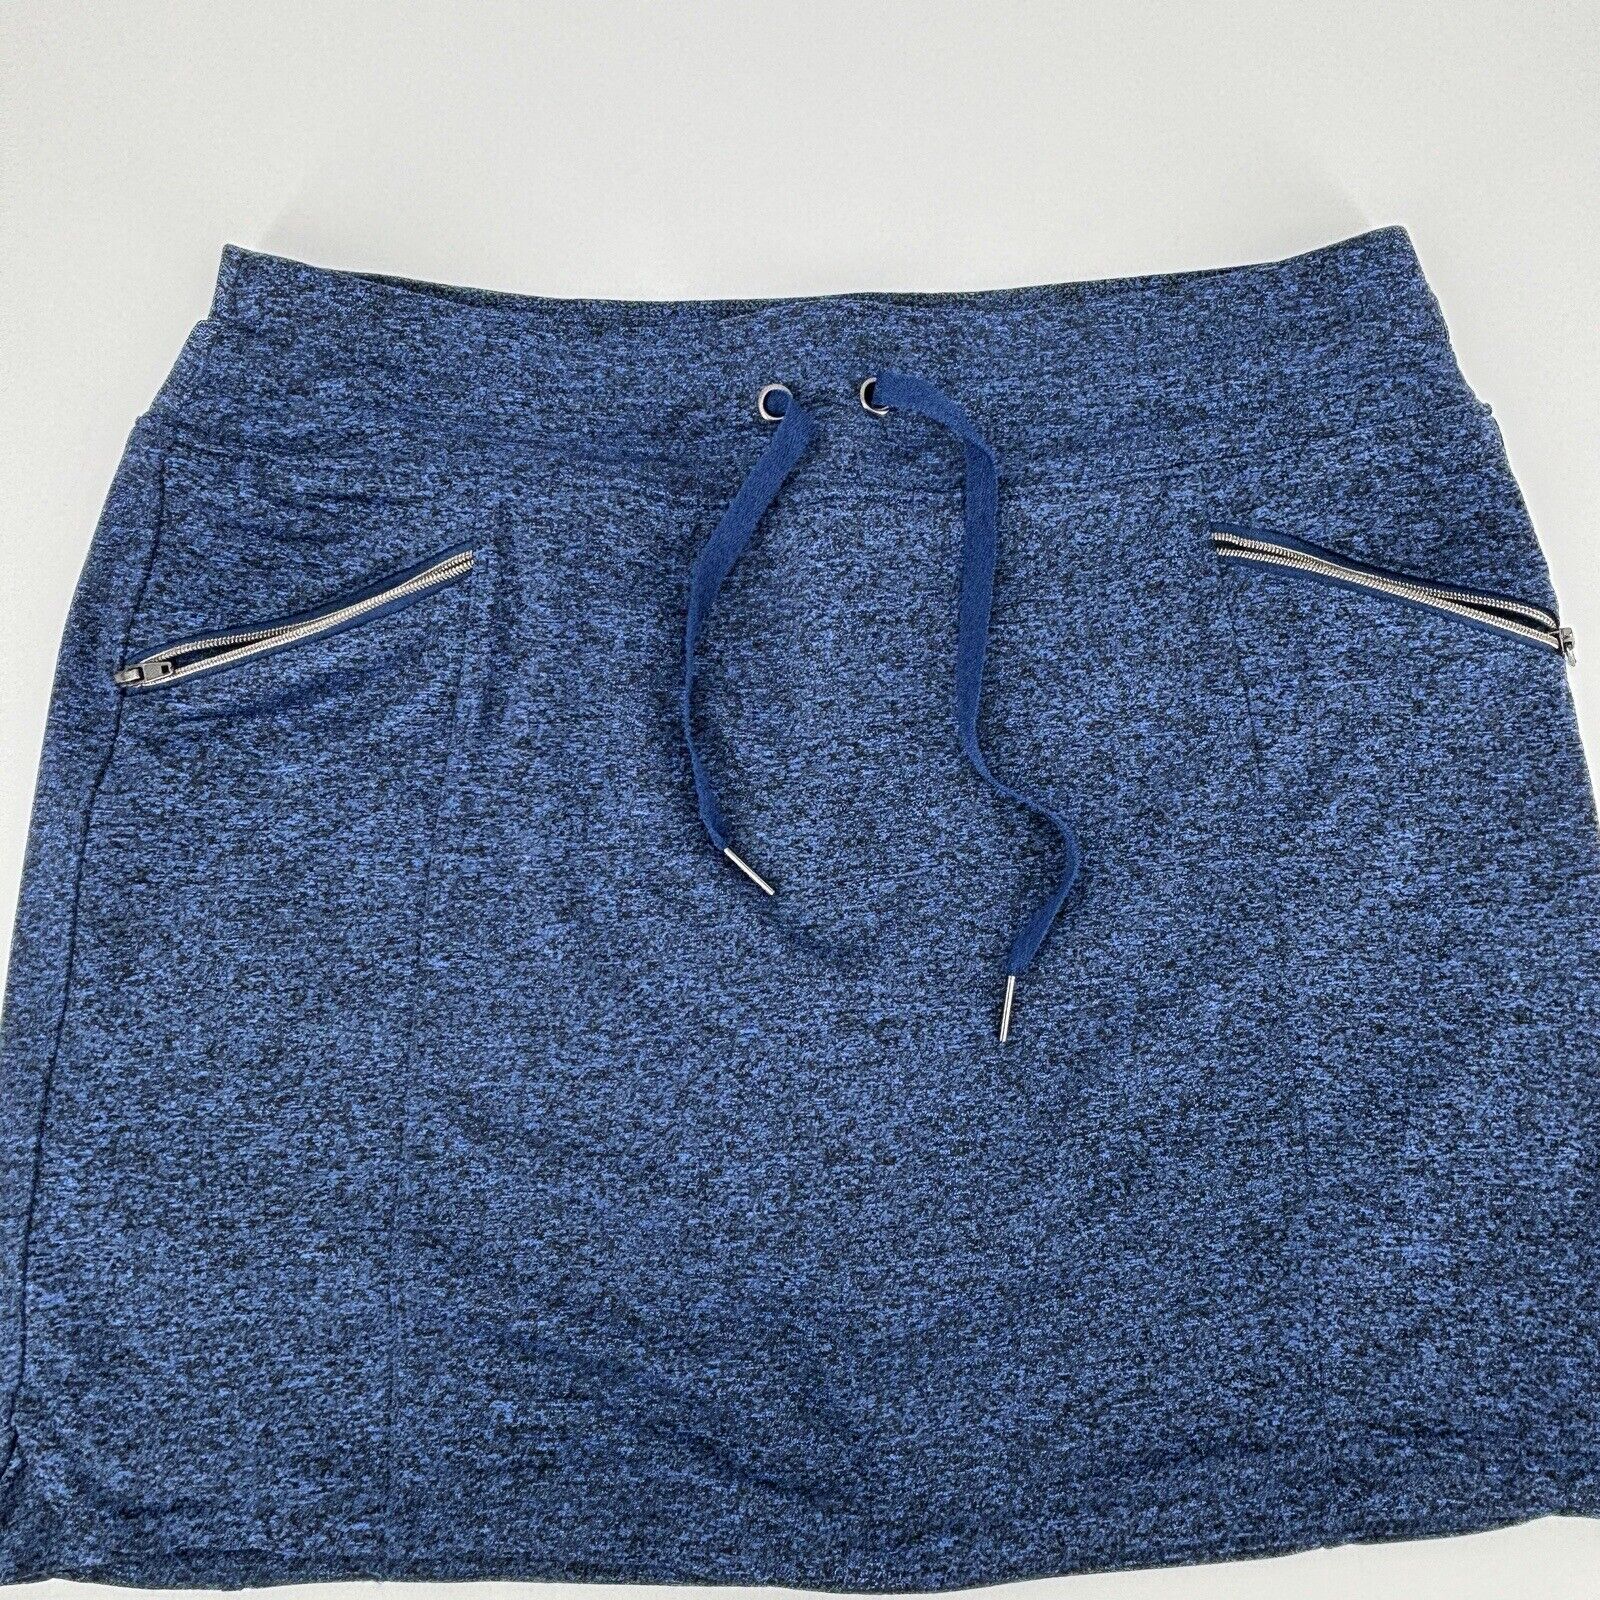 2 - Tangerine Women’s Blue & Gray Athletic Skirt … - image 3